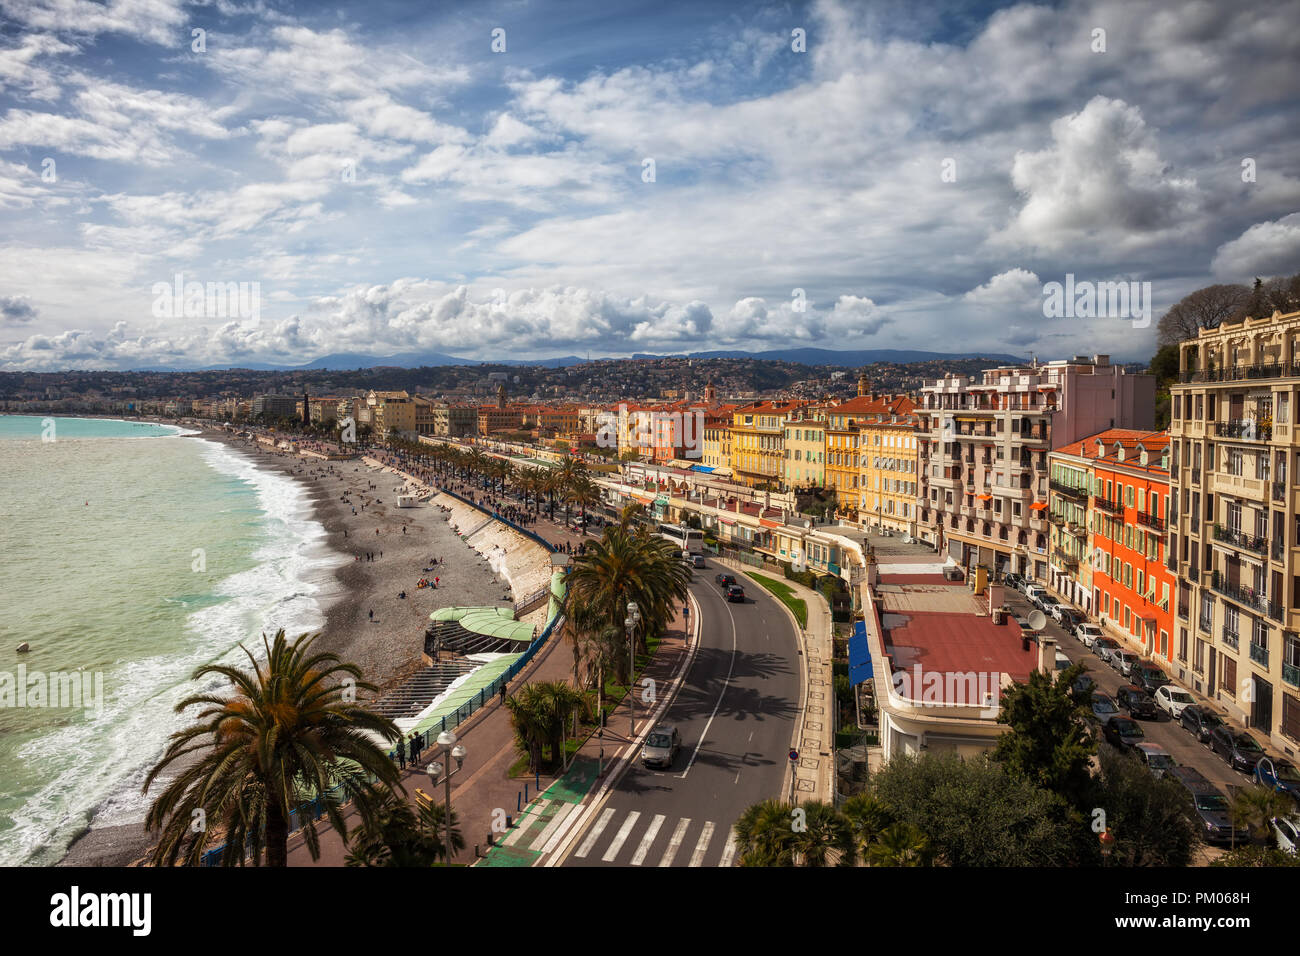 Sur les toits de la ville de Nice en France, la plage le long de la Promenade des Anglais sur la côte d'Azur Banque D'Images